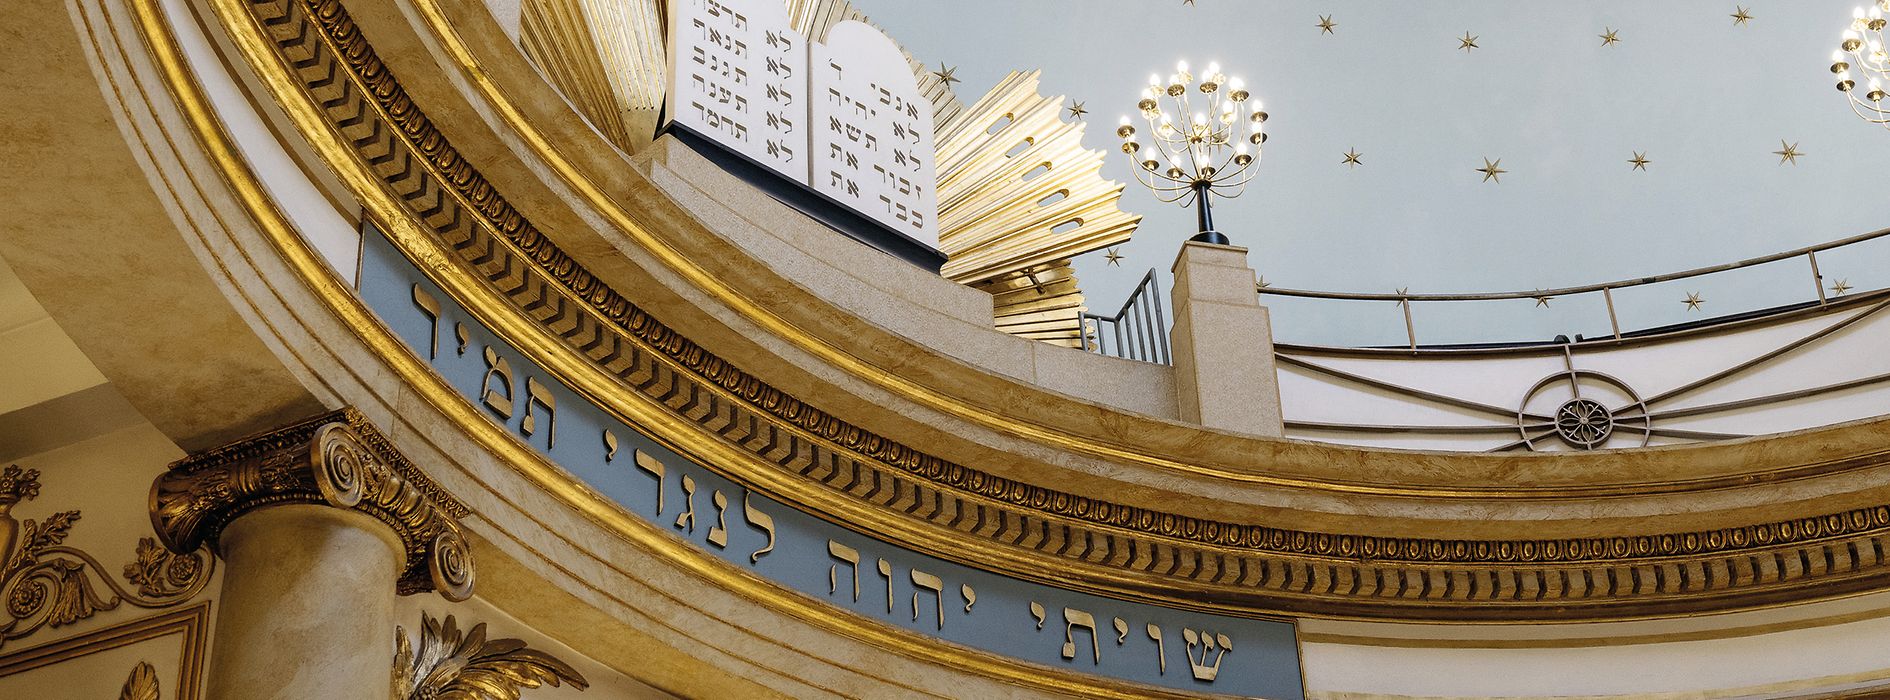 Templo de la Ciudad de la comunidad judía